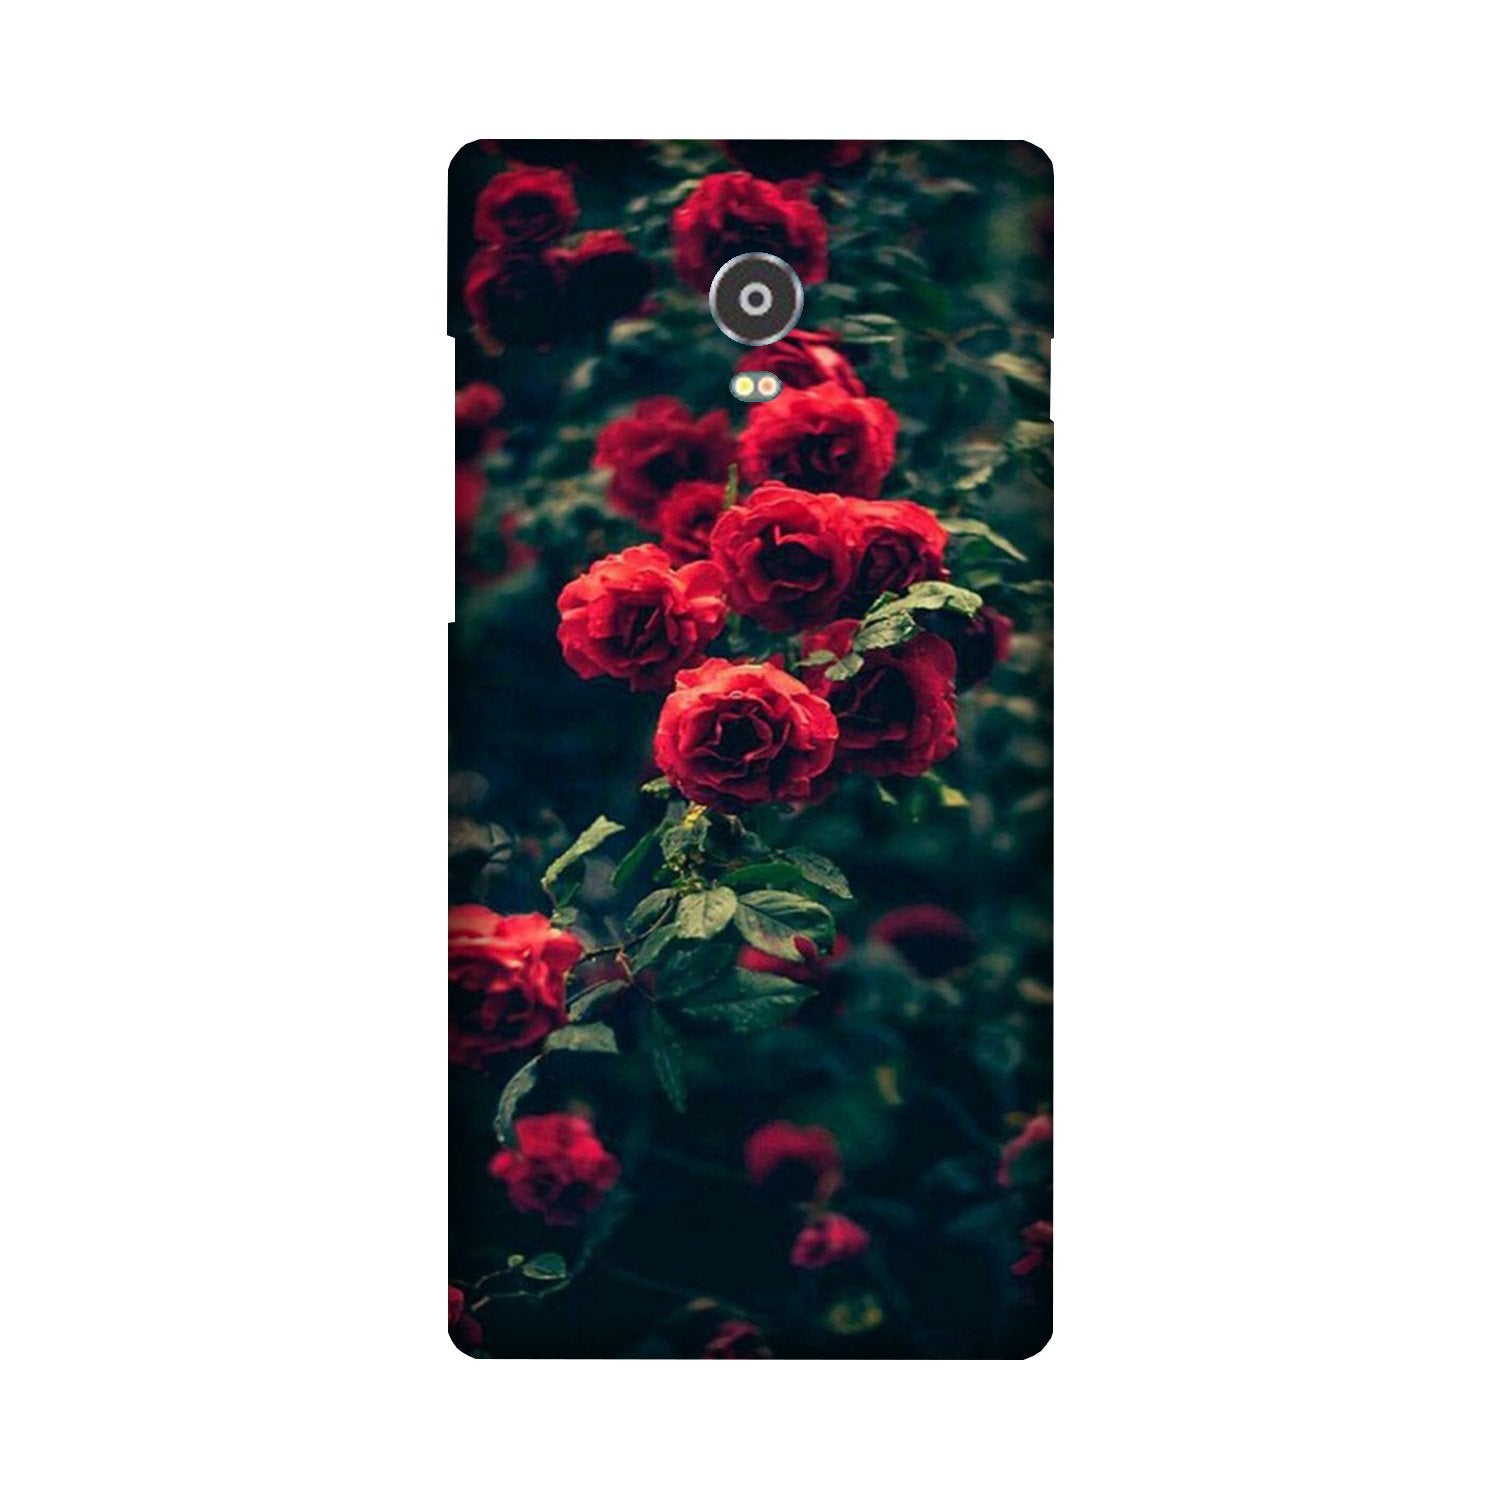 Red Rose Case for Lenovo Vibe P1